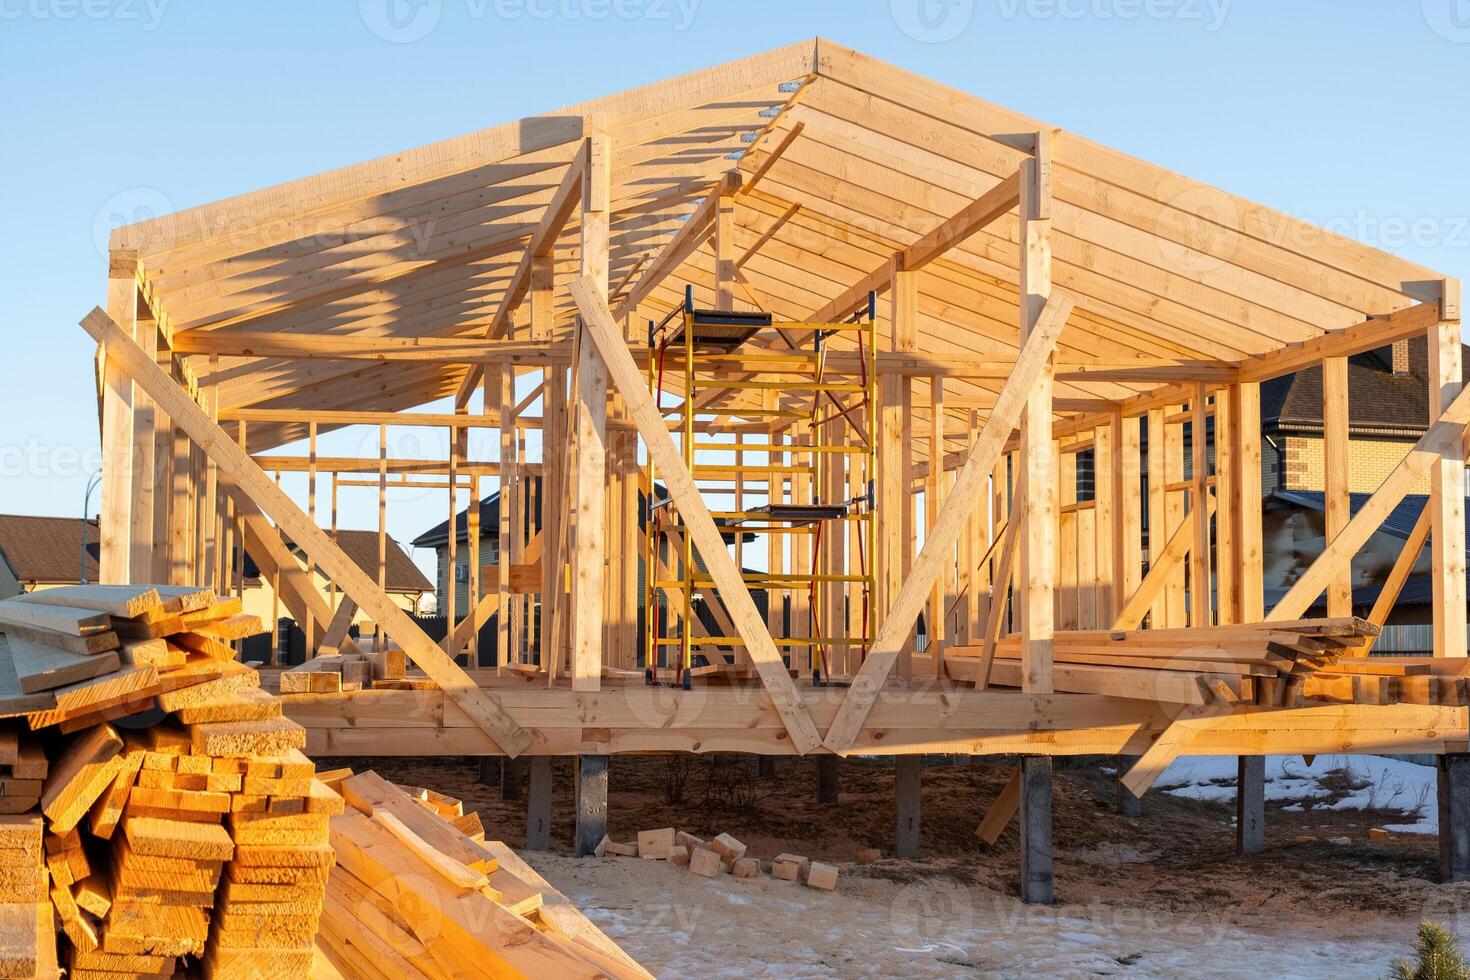 construcción de un de madera marco casa - marco desde el base, paredes, techo en zancos es un construcción sitio, el proceso de edificio un marco foto